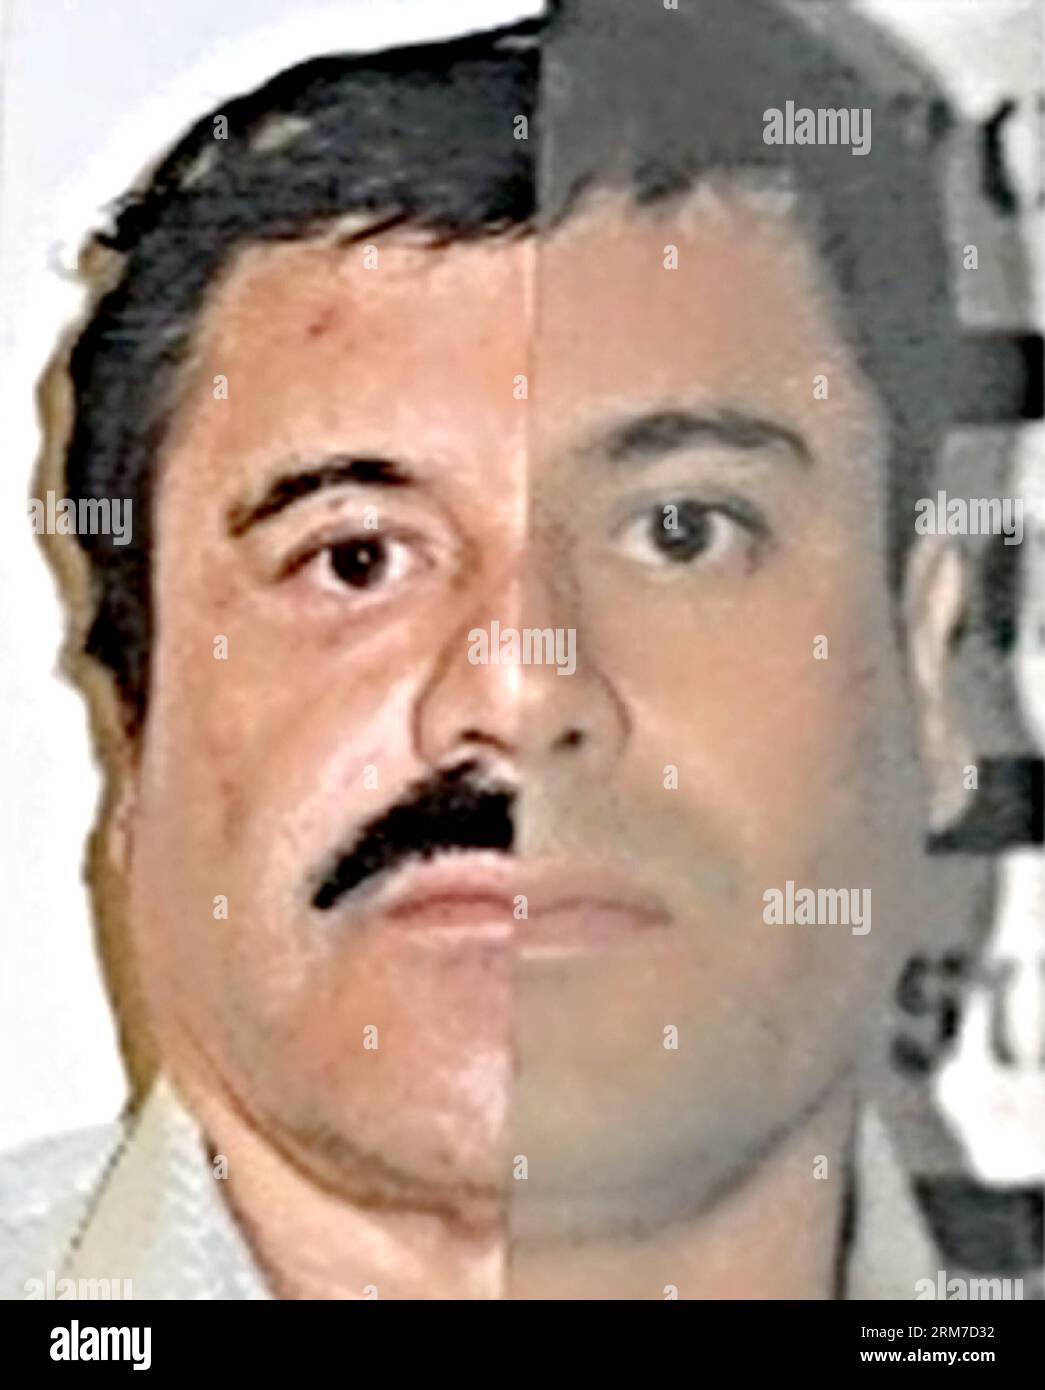 (140226) -- MEXICO, 26 février 2014 (Xinhua) -- ce combo de photographies publiées par le Bureau du procureur général (PGR) du Mexique avec des marques cartographiques d'identification faites par la source pour souligner les similitudes dans les mesures du visage, montre Joaquin El Chapo Guzman, en utilisant des images faites de ses détentions de 1993 et 2014. Le chef du cartel Sinaloa a été soumis à un prélèvement buccal, à une étude d'identité phisiognomique et à un test de 10 empreintes digitales. Mardi, les tribunaux fédéraux au Mexique ont officiellement inculpé Joaquin El Chapo Guzman, le chef capturé du cartel de la drogue de Sinaloa, de crime organisé et de trafic de drogue. (X Banque D'Images